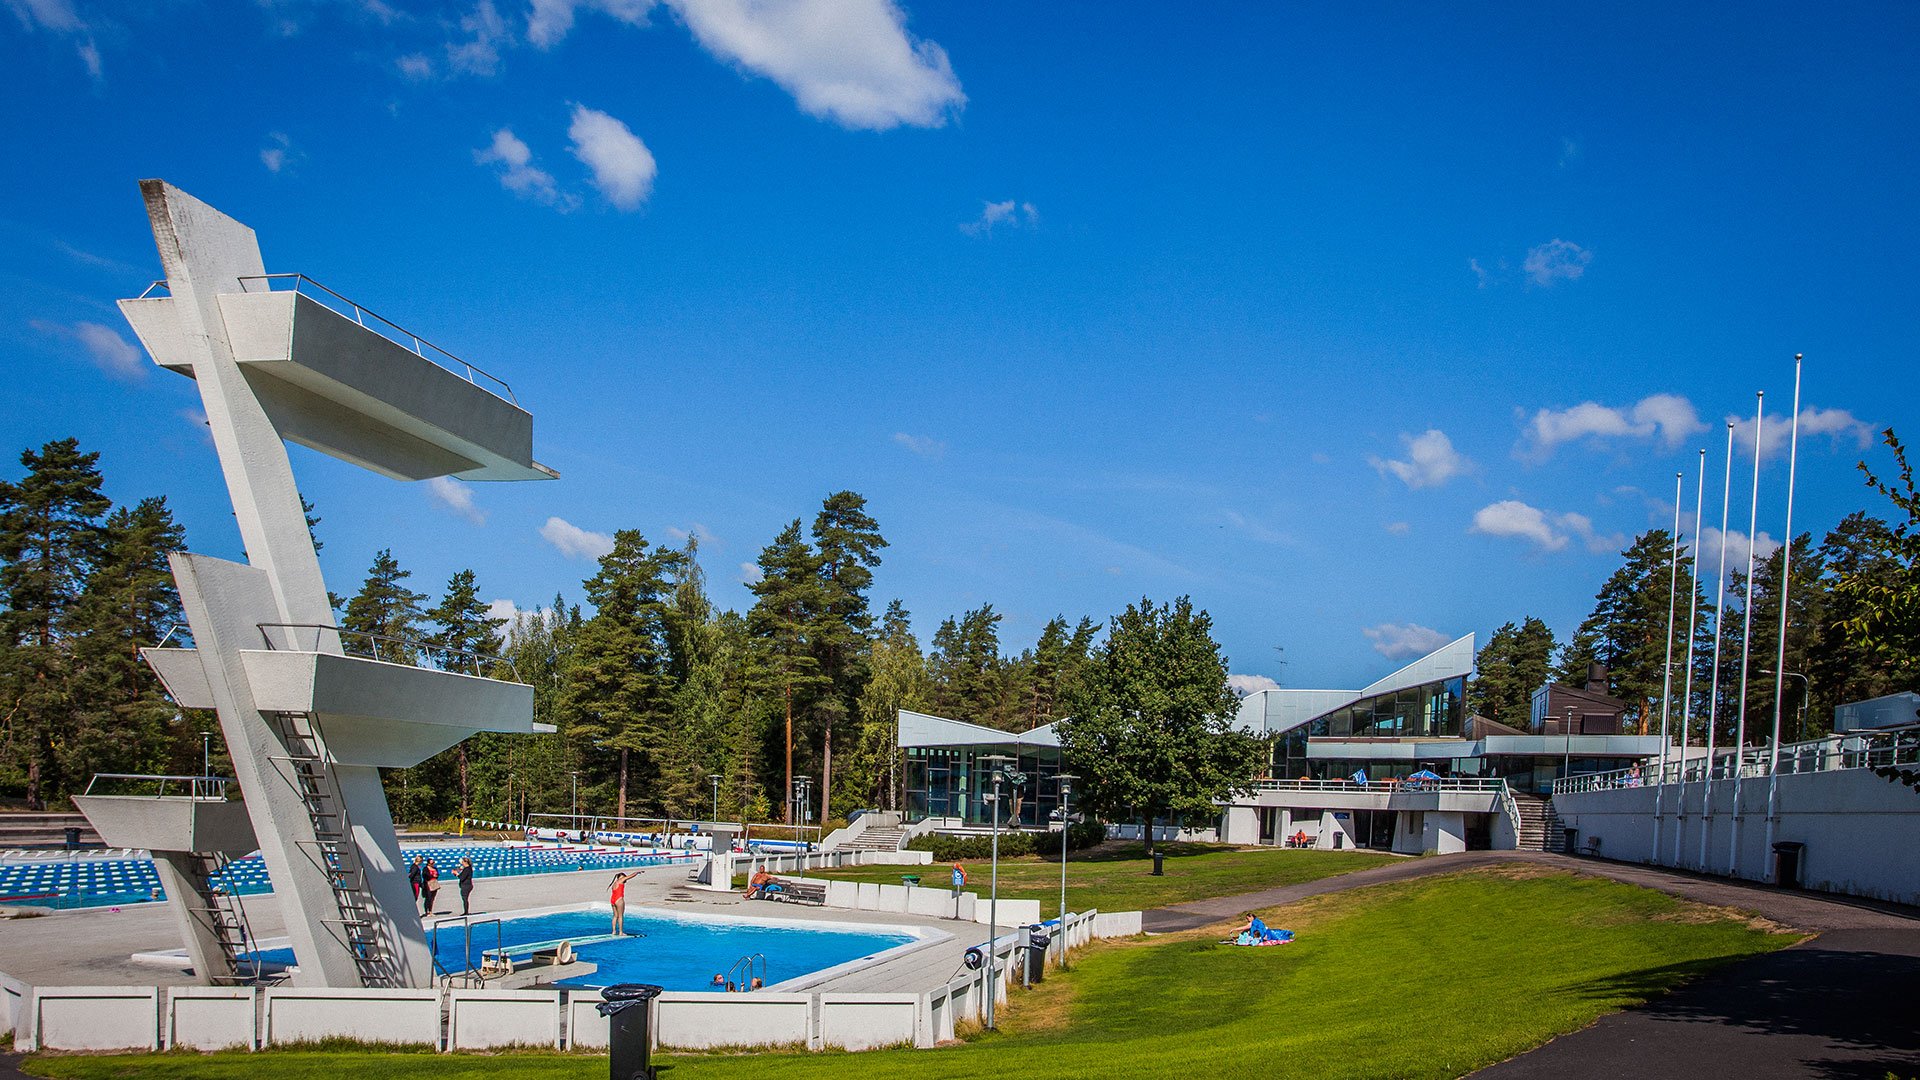 Sveitsi Swimming Centre renovation and extension, Hyvinkää